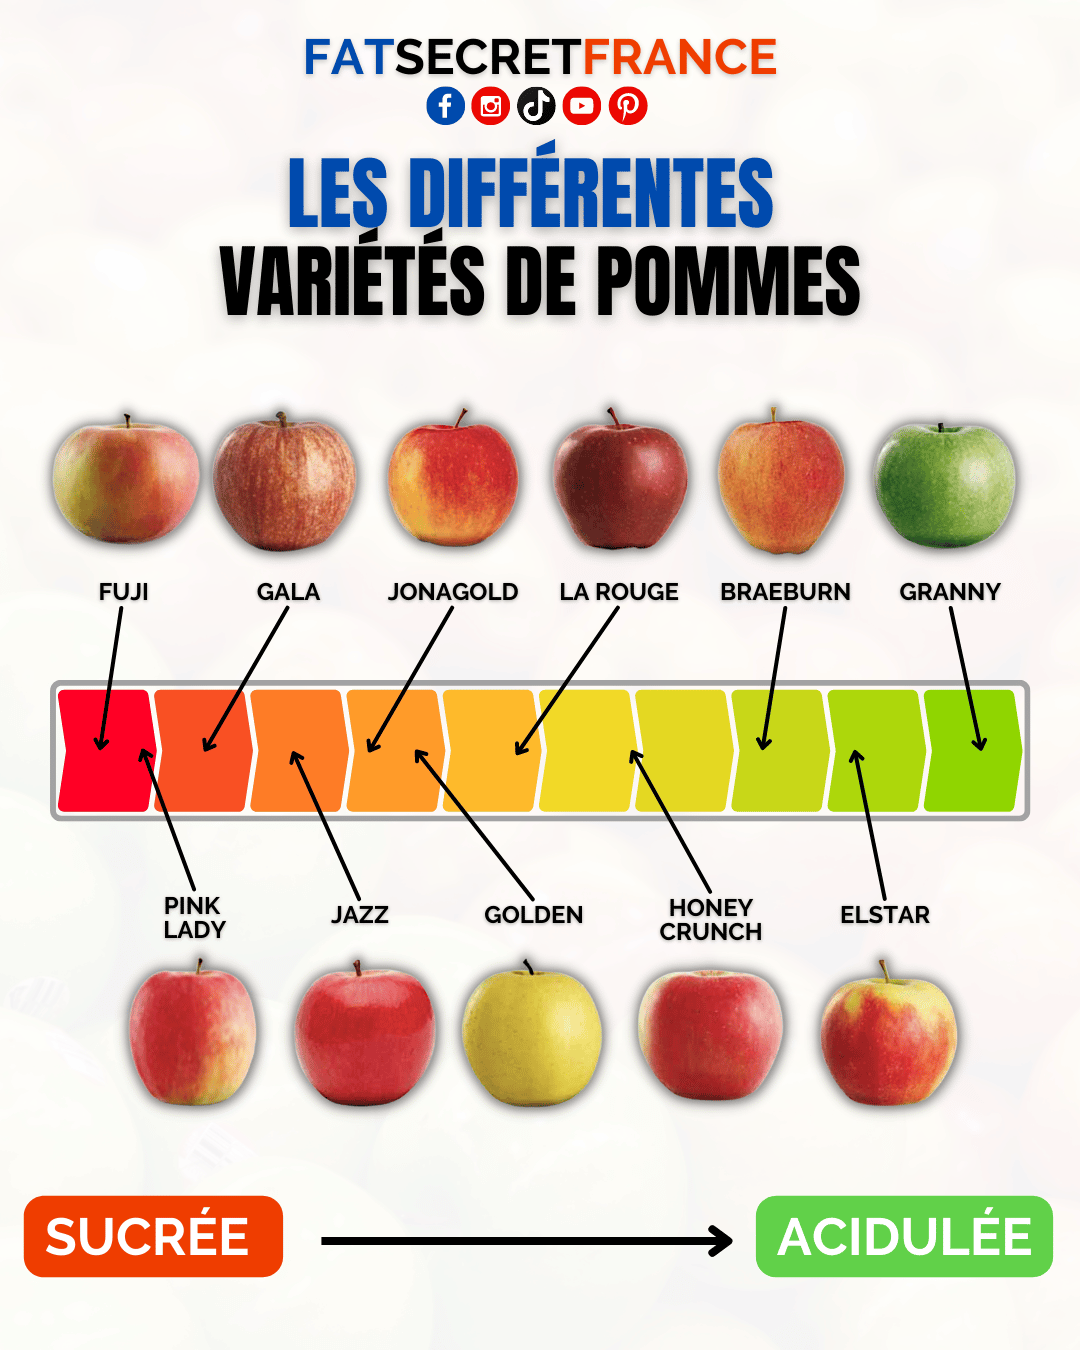 Les différentes variétés de pommes - Fatsecretfrance